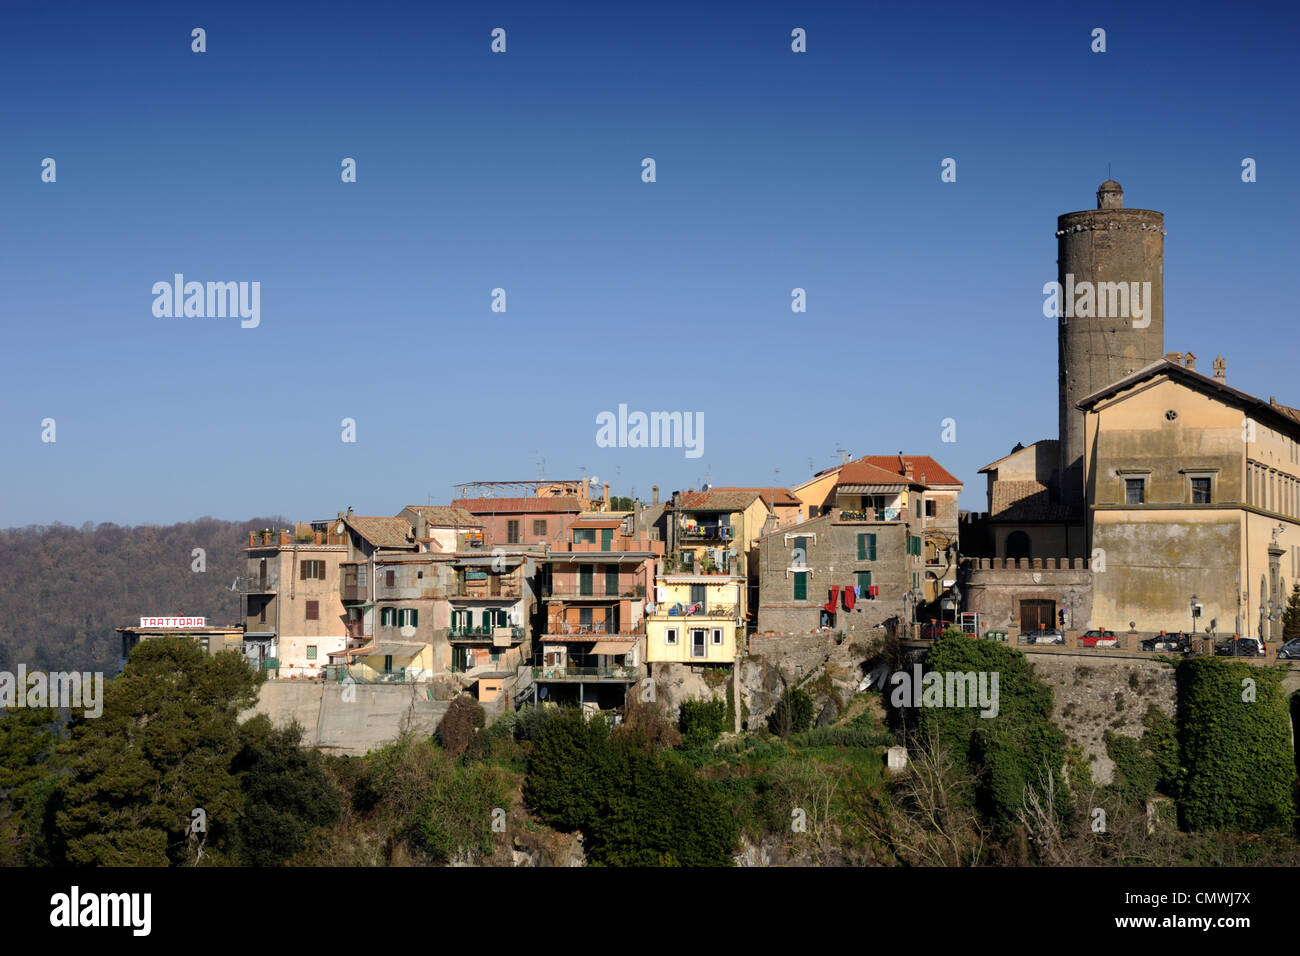 Italie, Latium, village de Nemi Banque D'Images